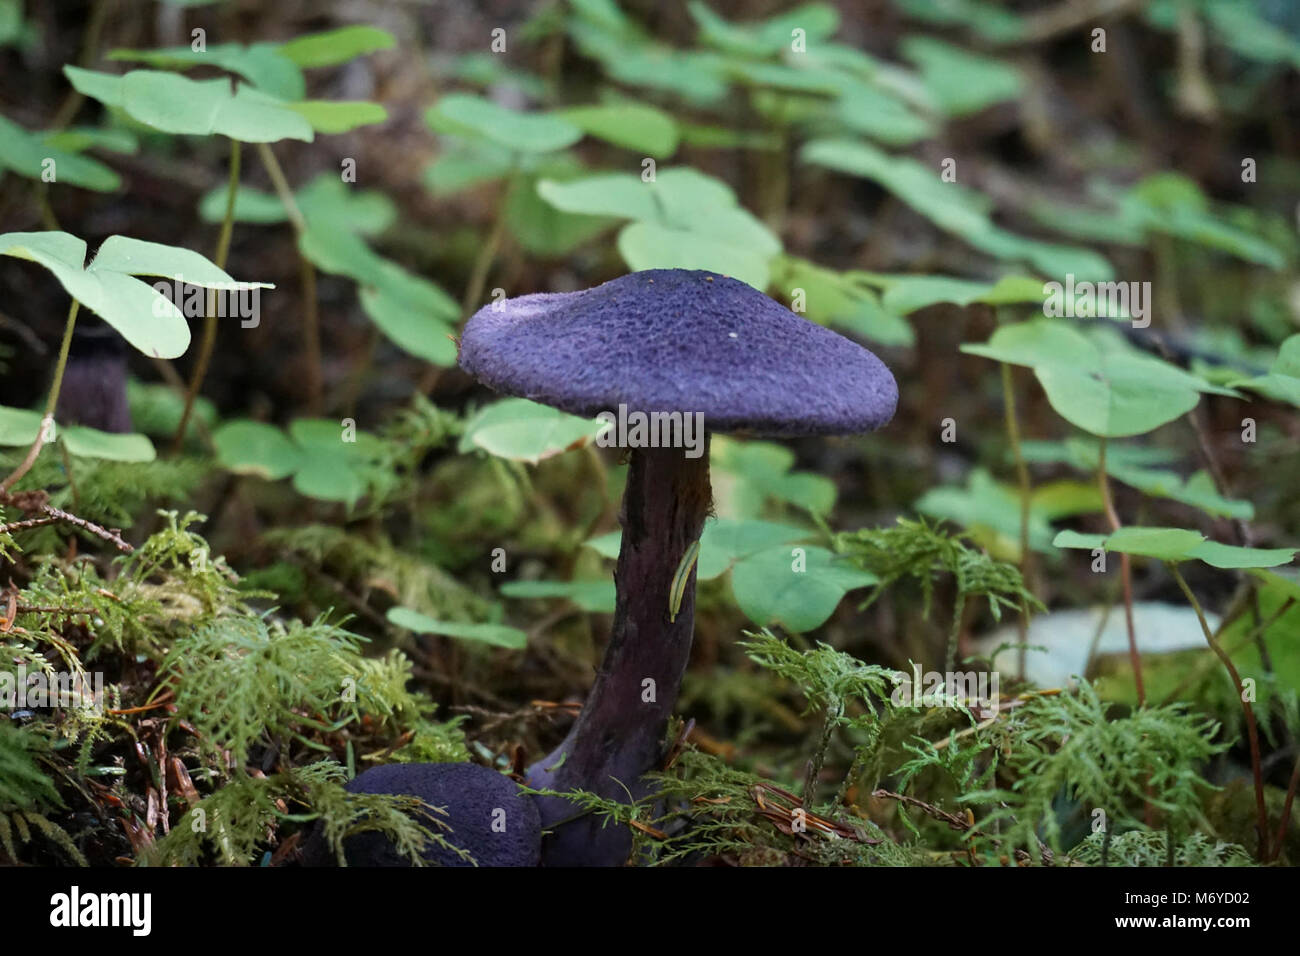 violet cort mushrooms cortinarius violaceus purple fungus d archuleta    . Stock Photo